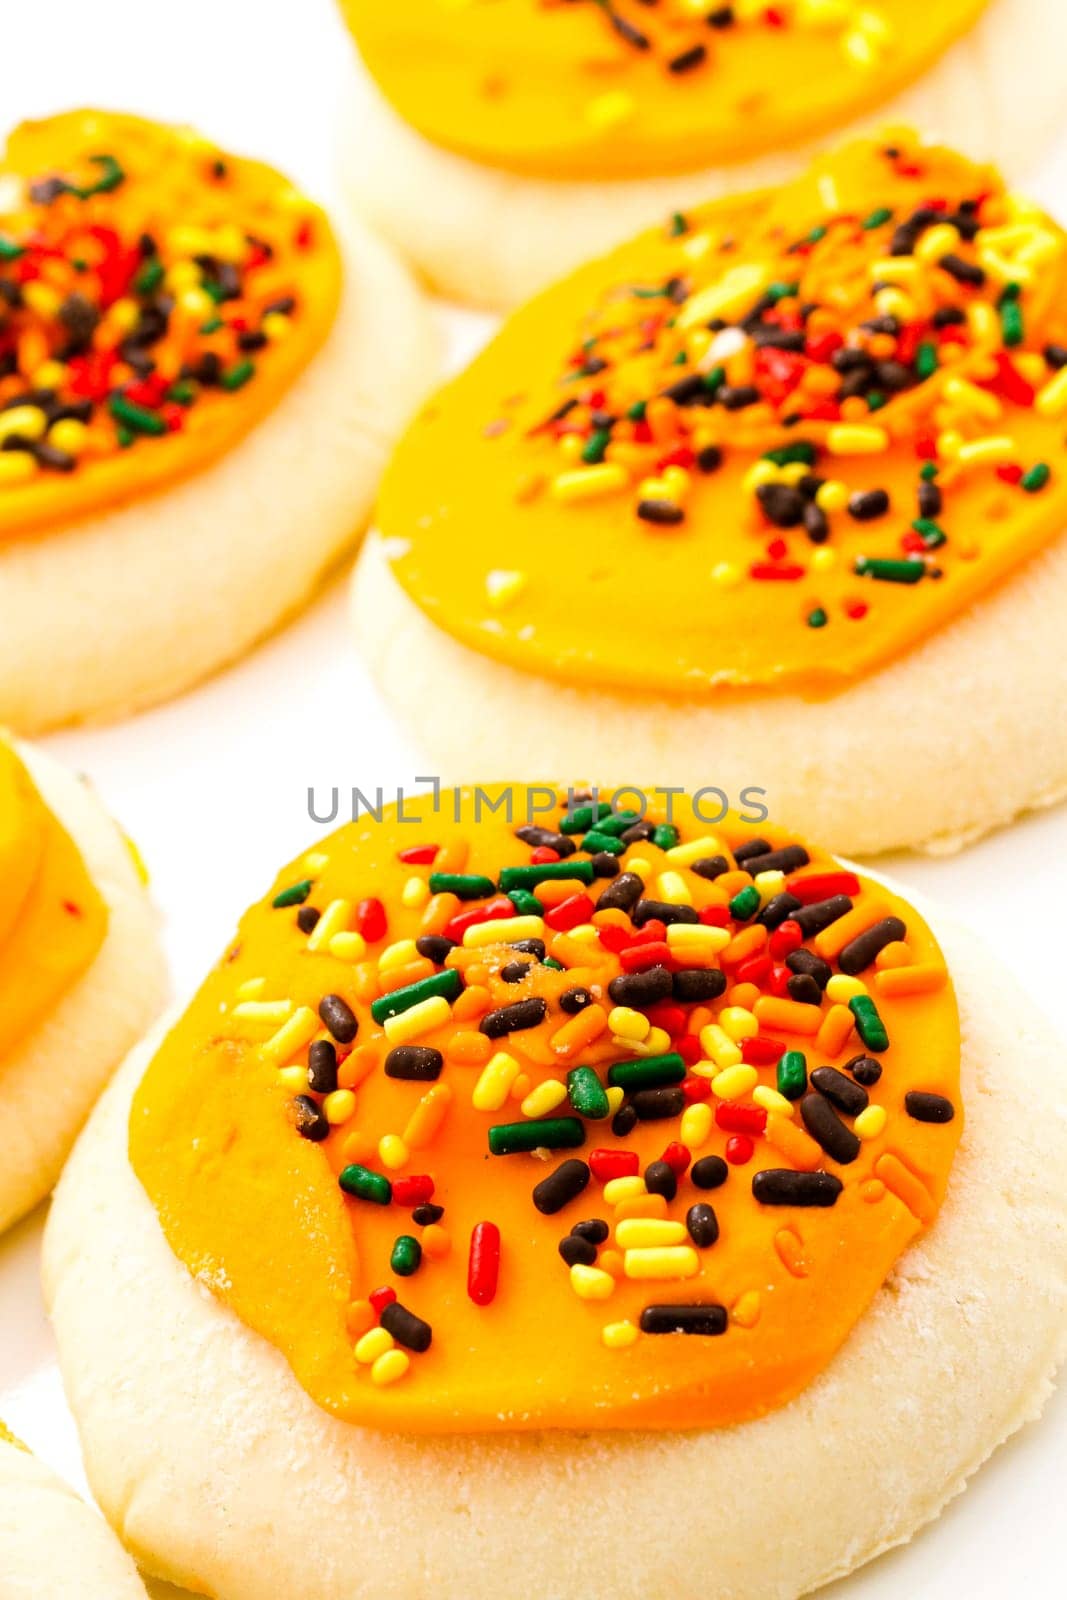 Sugar cookies by arinahabich